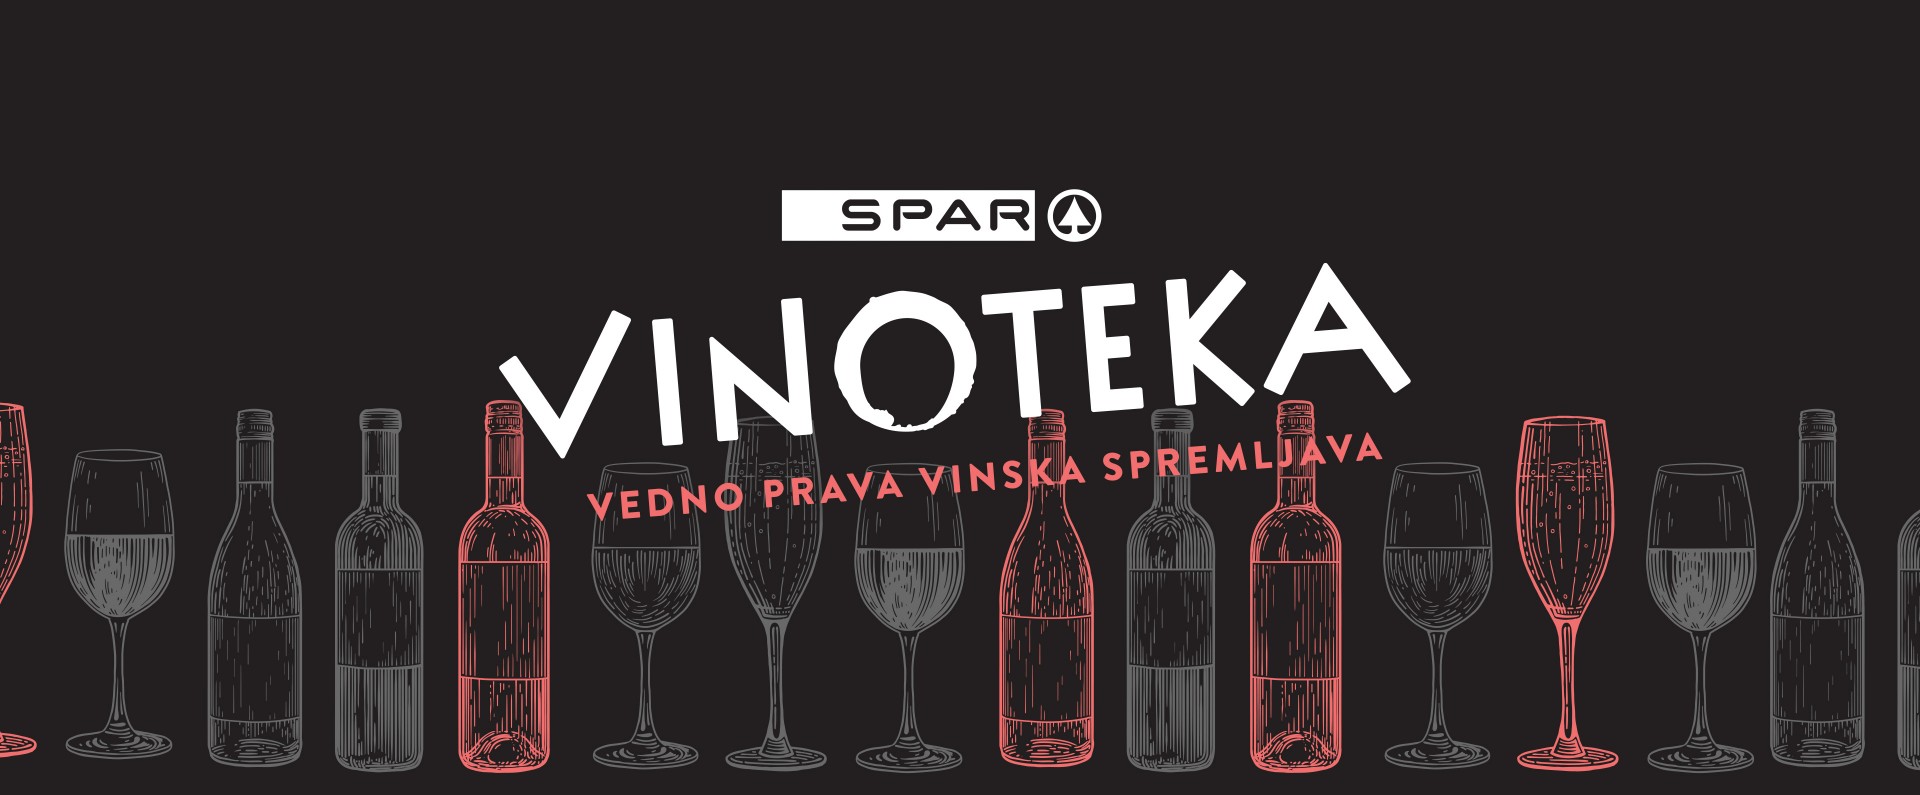 SPAR Vinoteka